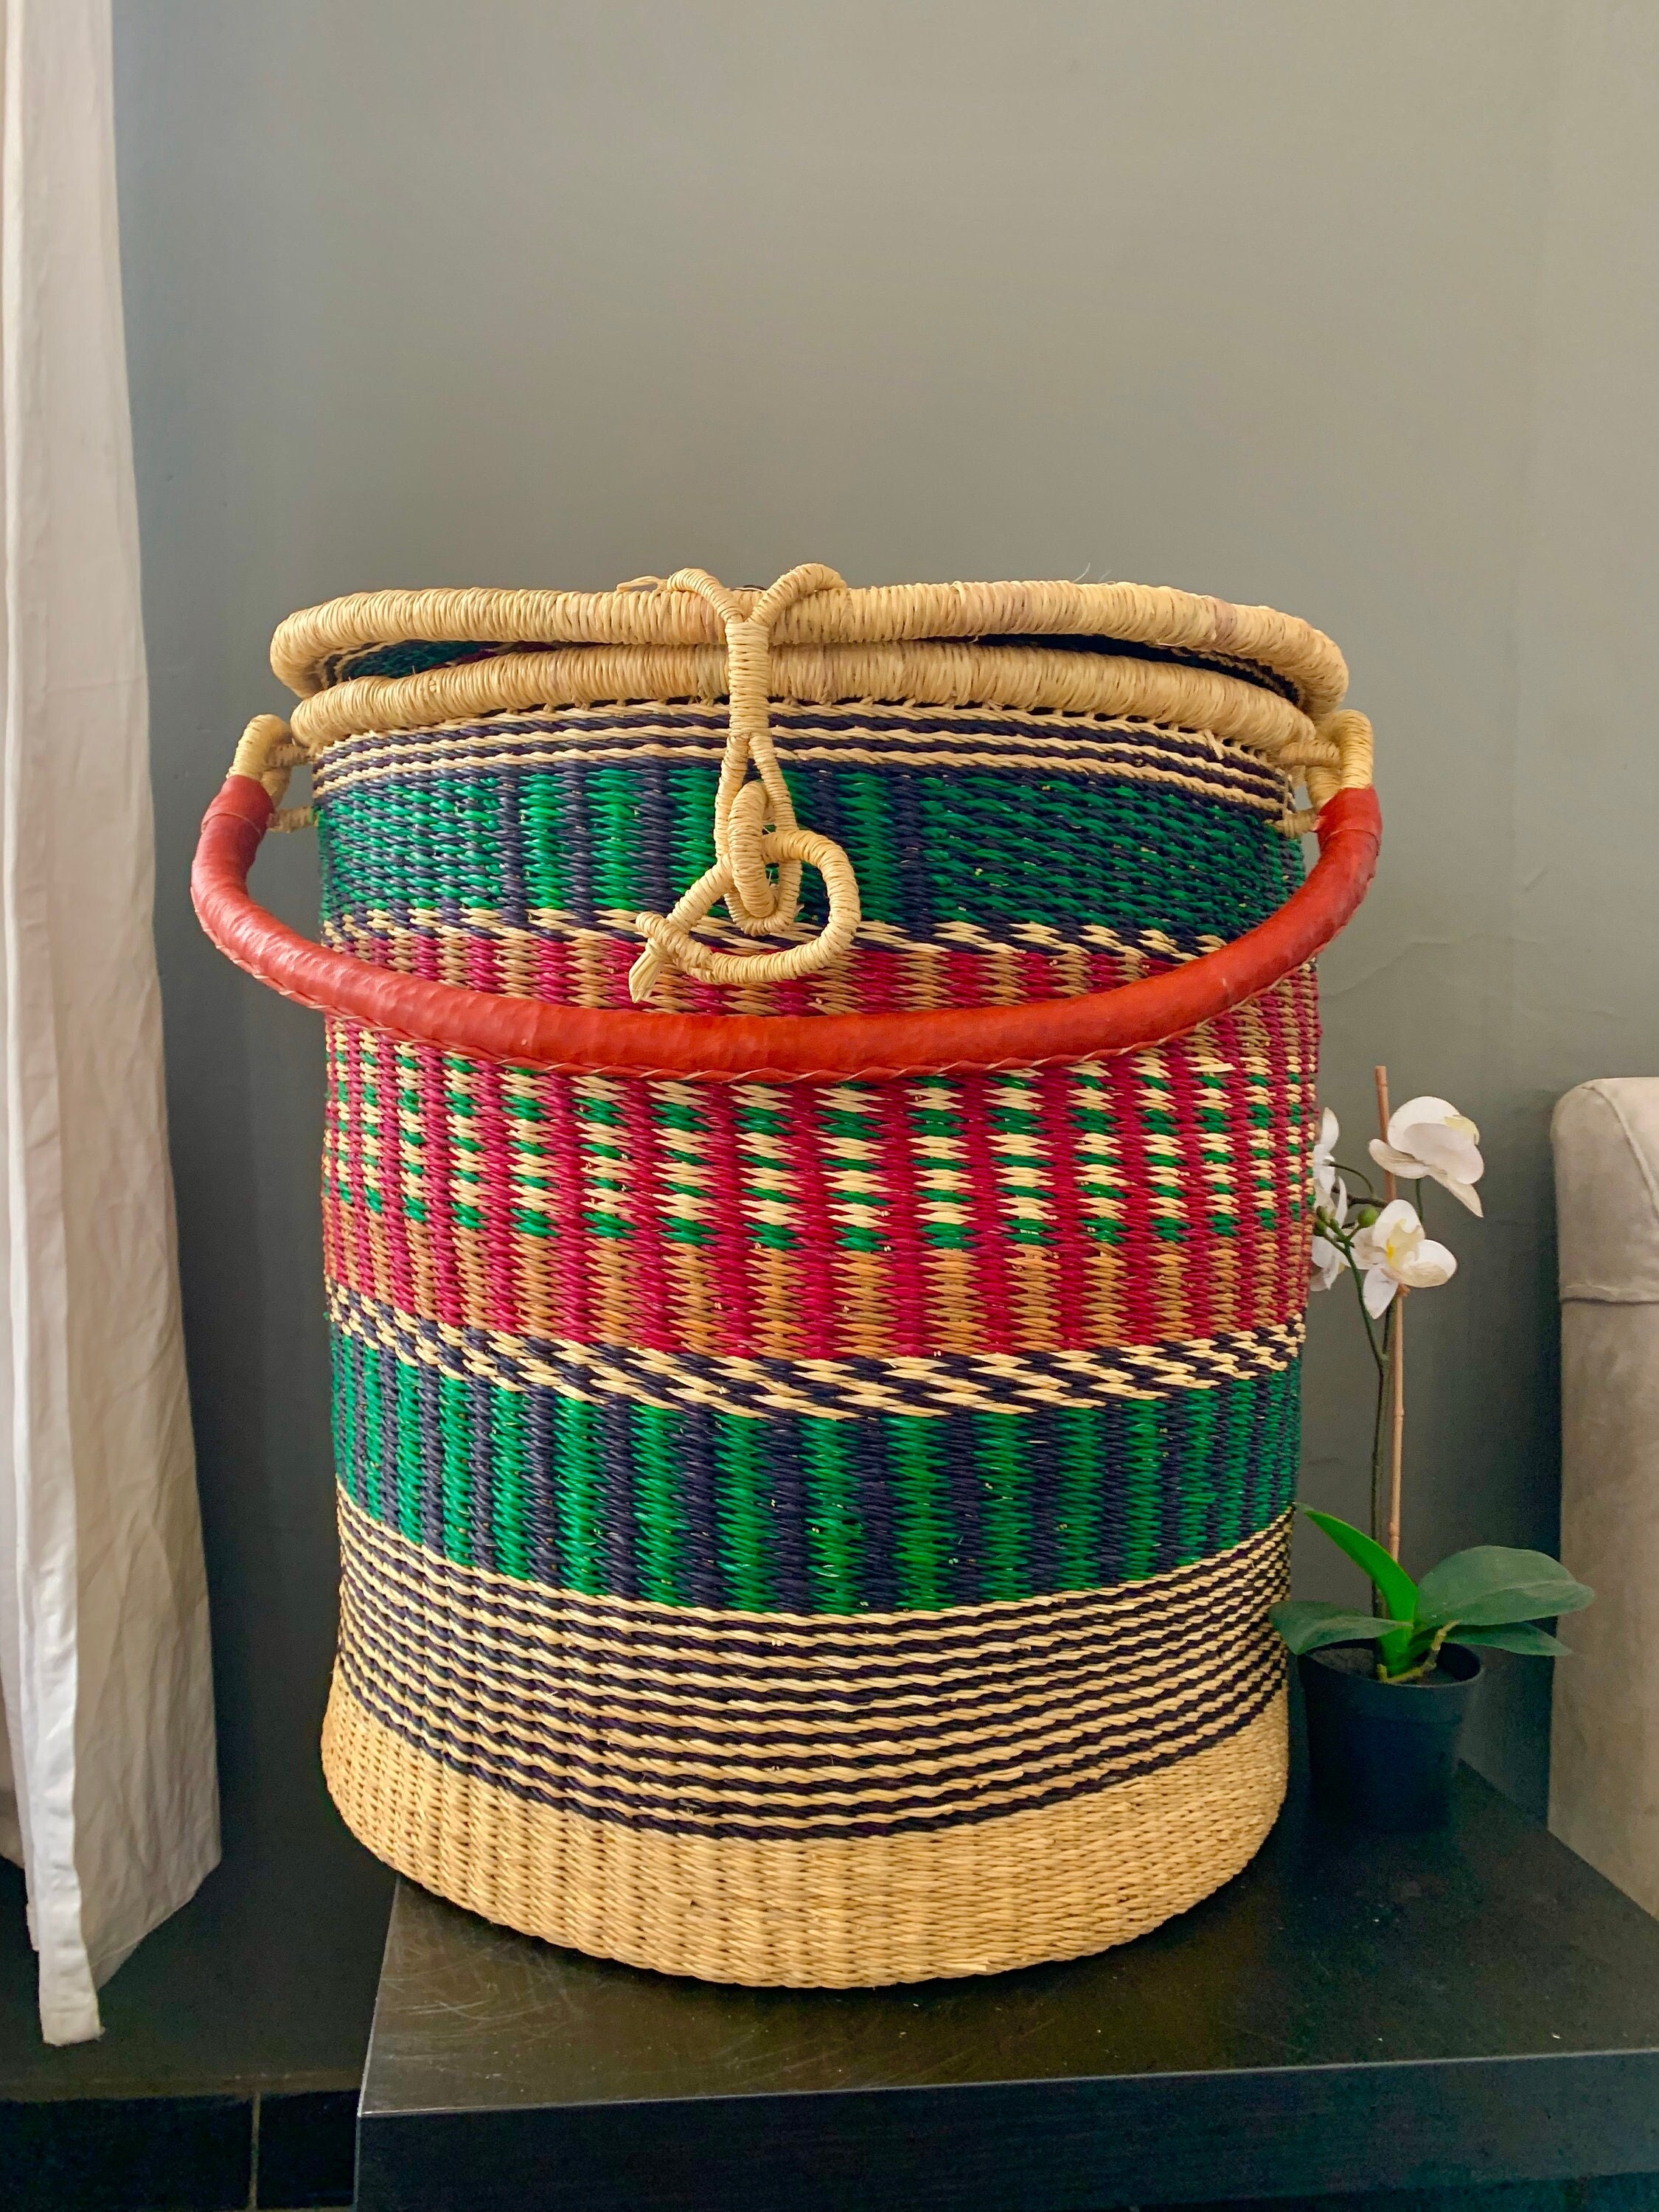 cesta con productos de limpieza para la higiene del hogar 14938519 Foto de  stock en Vecteezy